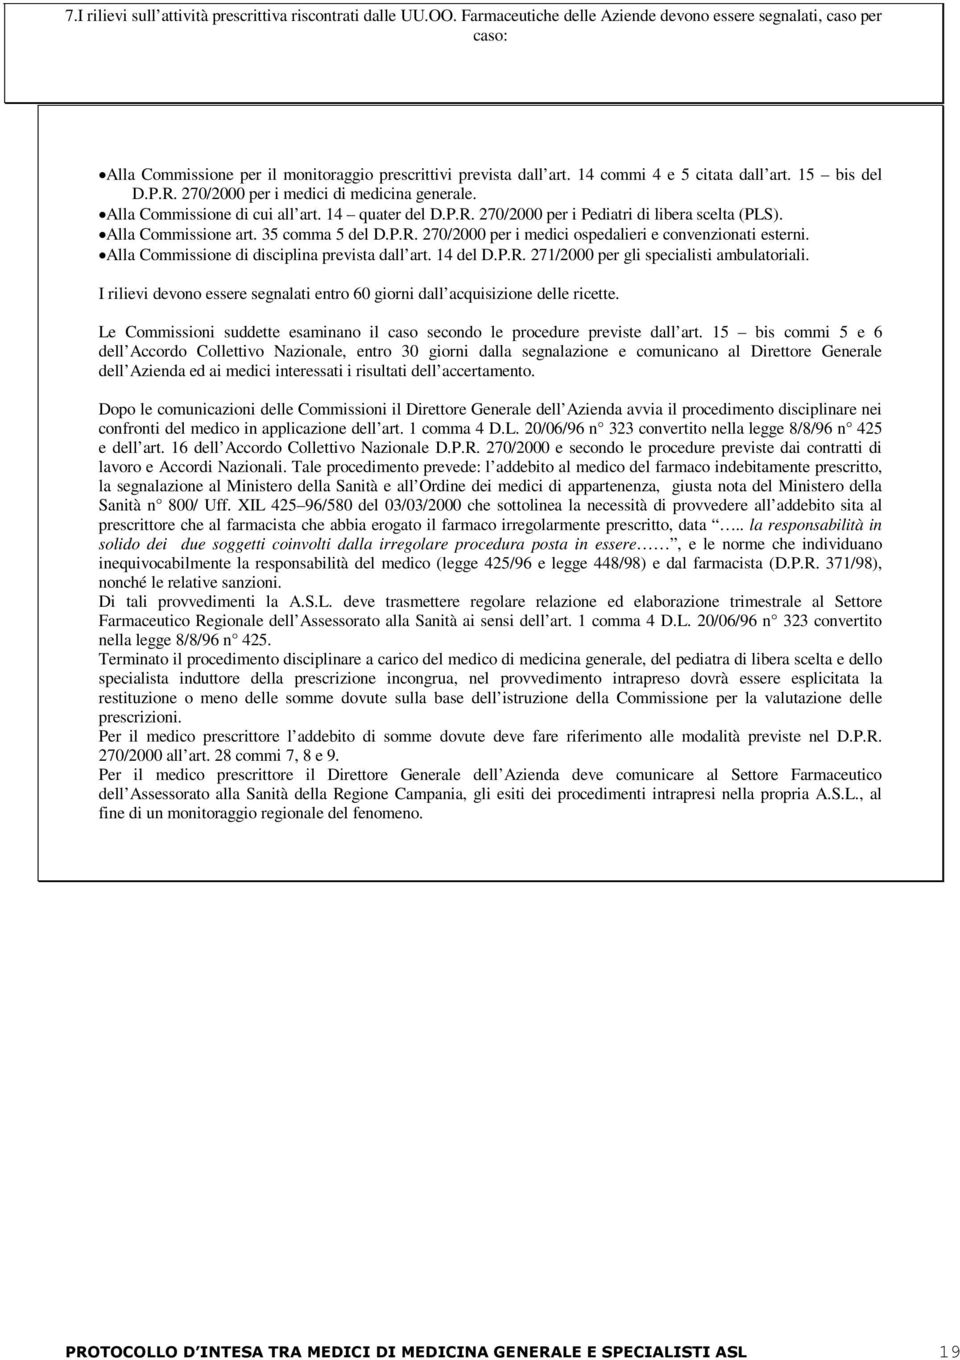 Alla Commissione art. 35 comma 5 del D.P.R. 270/2000 per i medici ospedalieri e convenzionati esterni. Alla Commissione di disciplina prevista dall art. 4 del D.P.R. 27/2000 per gli specialisti ambulatoriali.